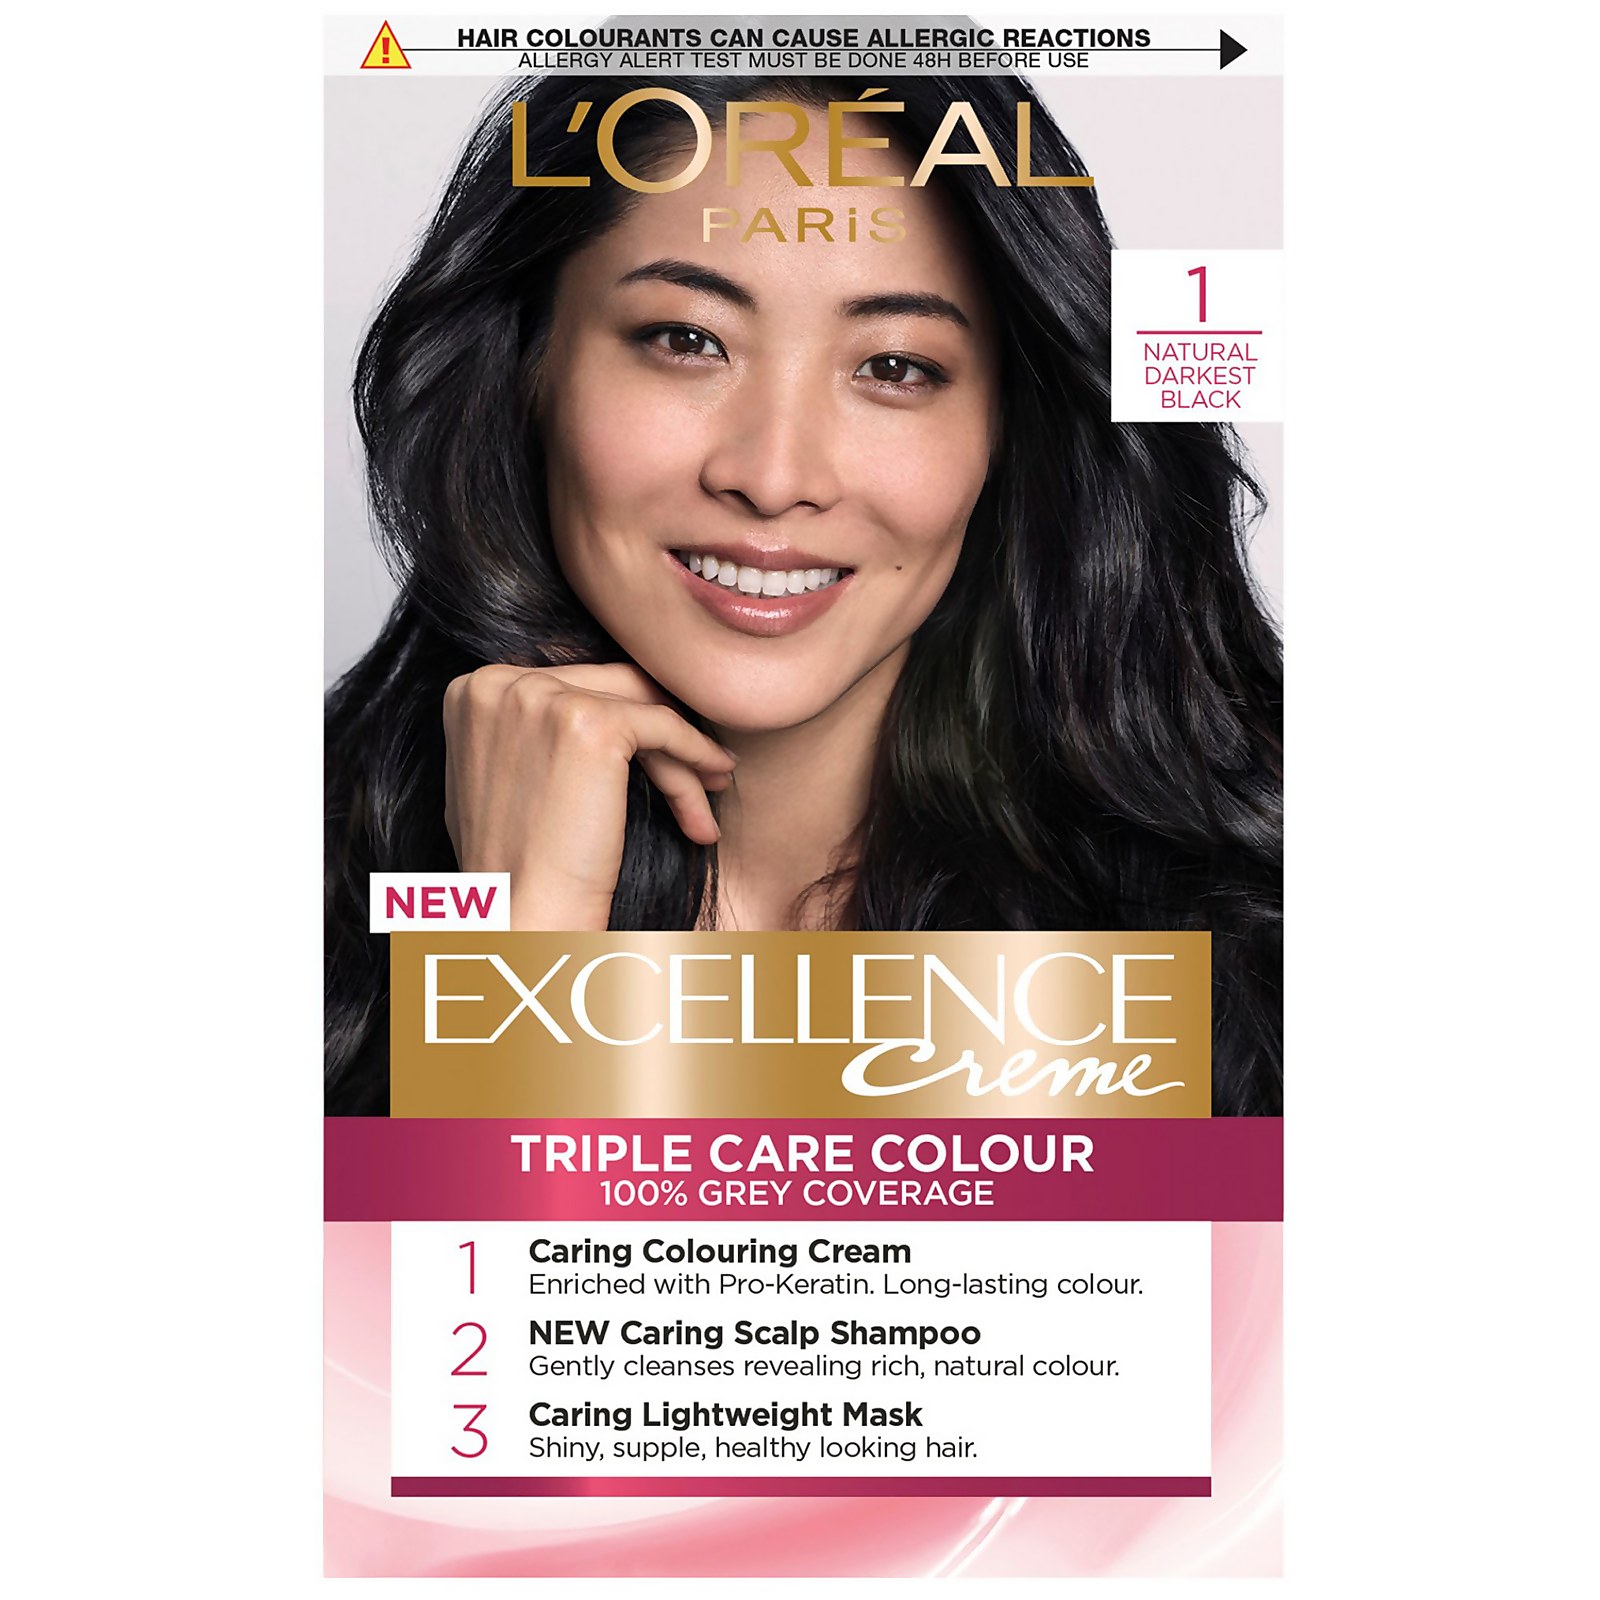 L'Oréal Paris Excellence Crème Permanent Hair Dye (Various Shades) - 1 Natural Darkest Black